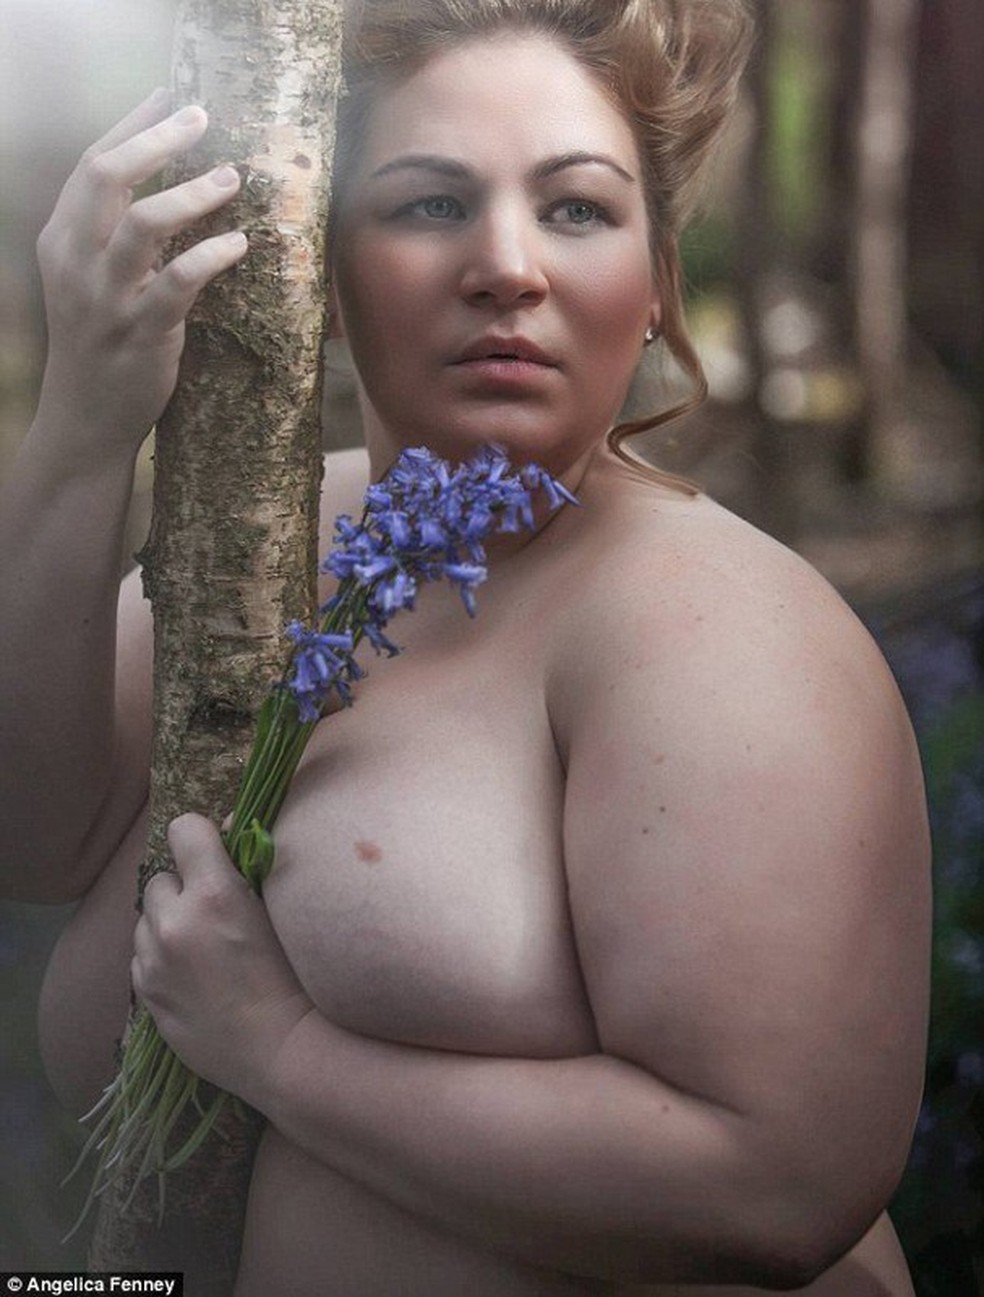 Modelo plus size em ensaio sensual após vencer doença (Foto: Reprodução/Mirror) — Foto: Glamour